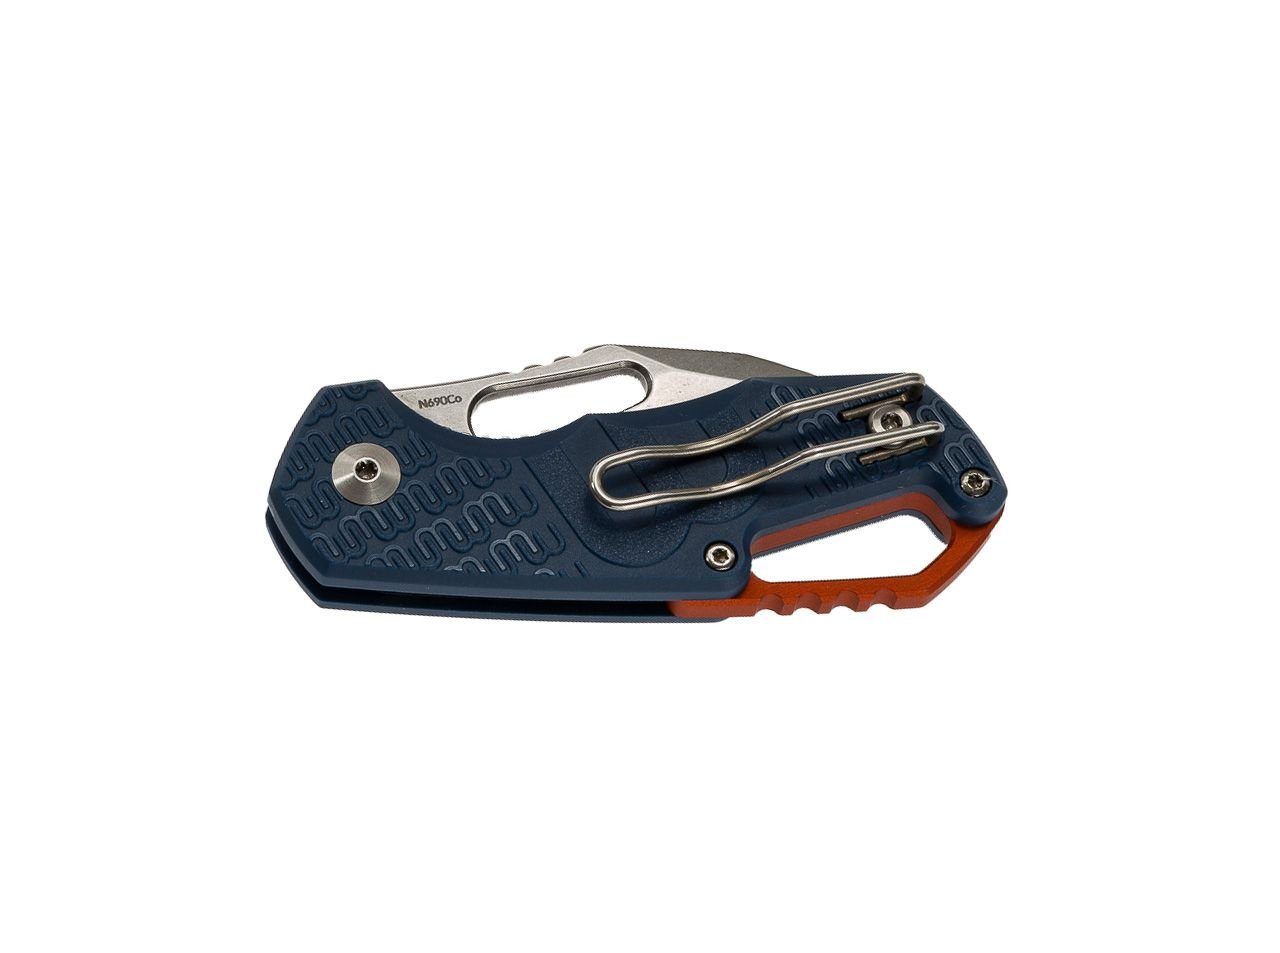 Klappmesser MKM Taschenmesser Clip Isonzo Lock Liner FRN Blue